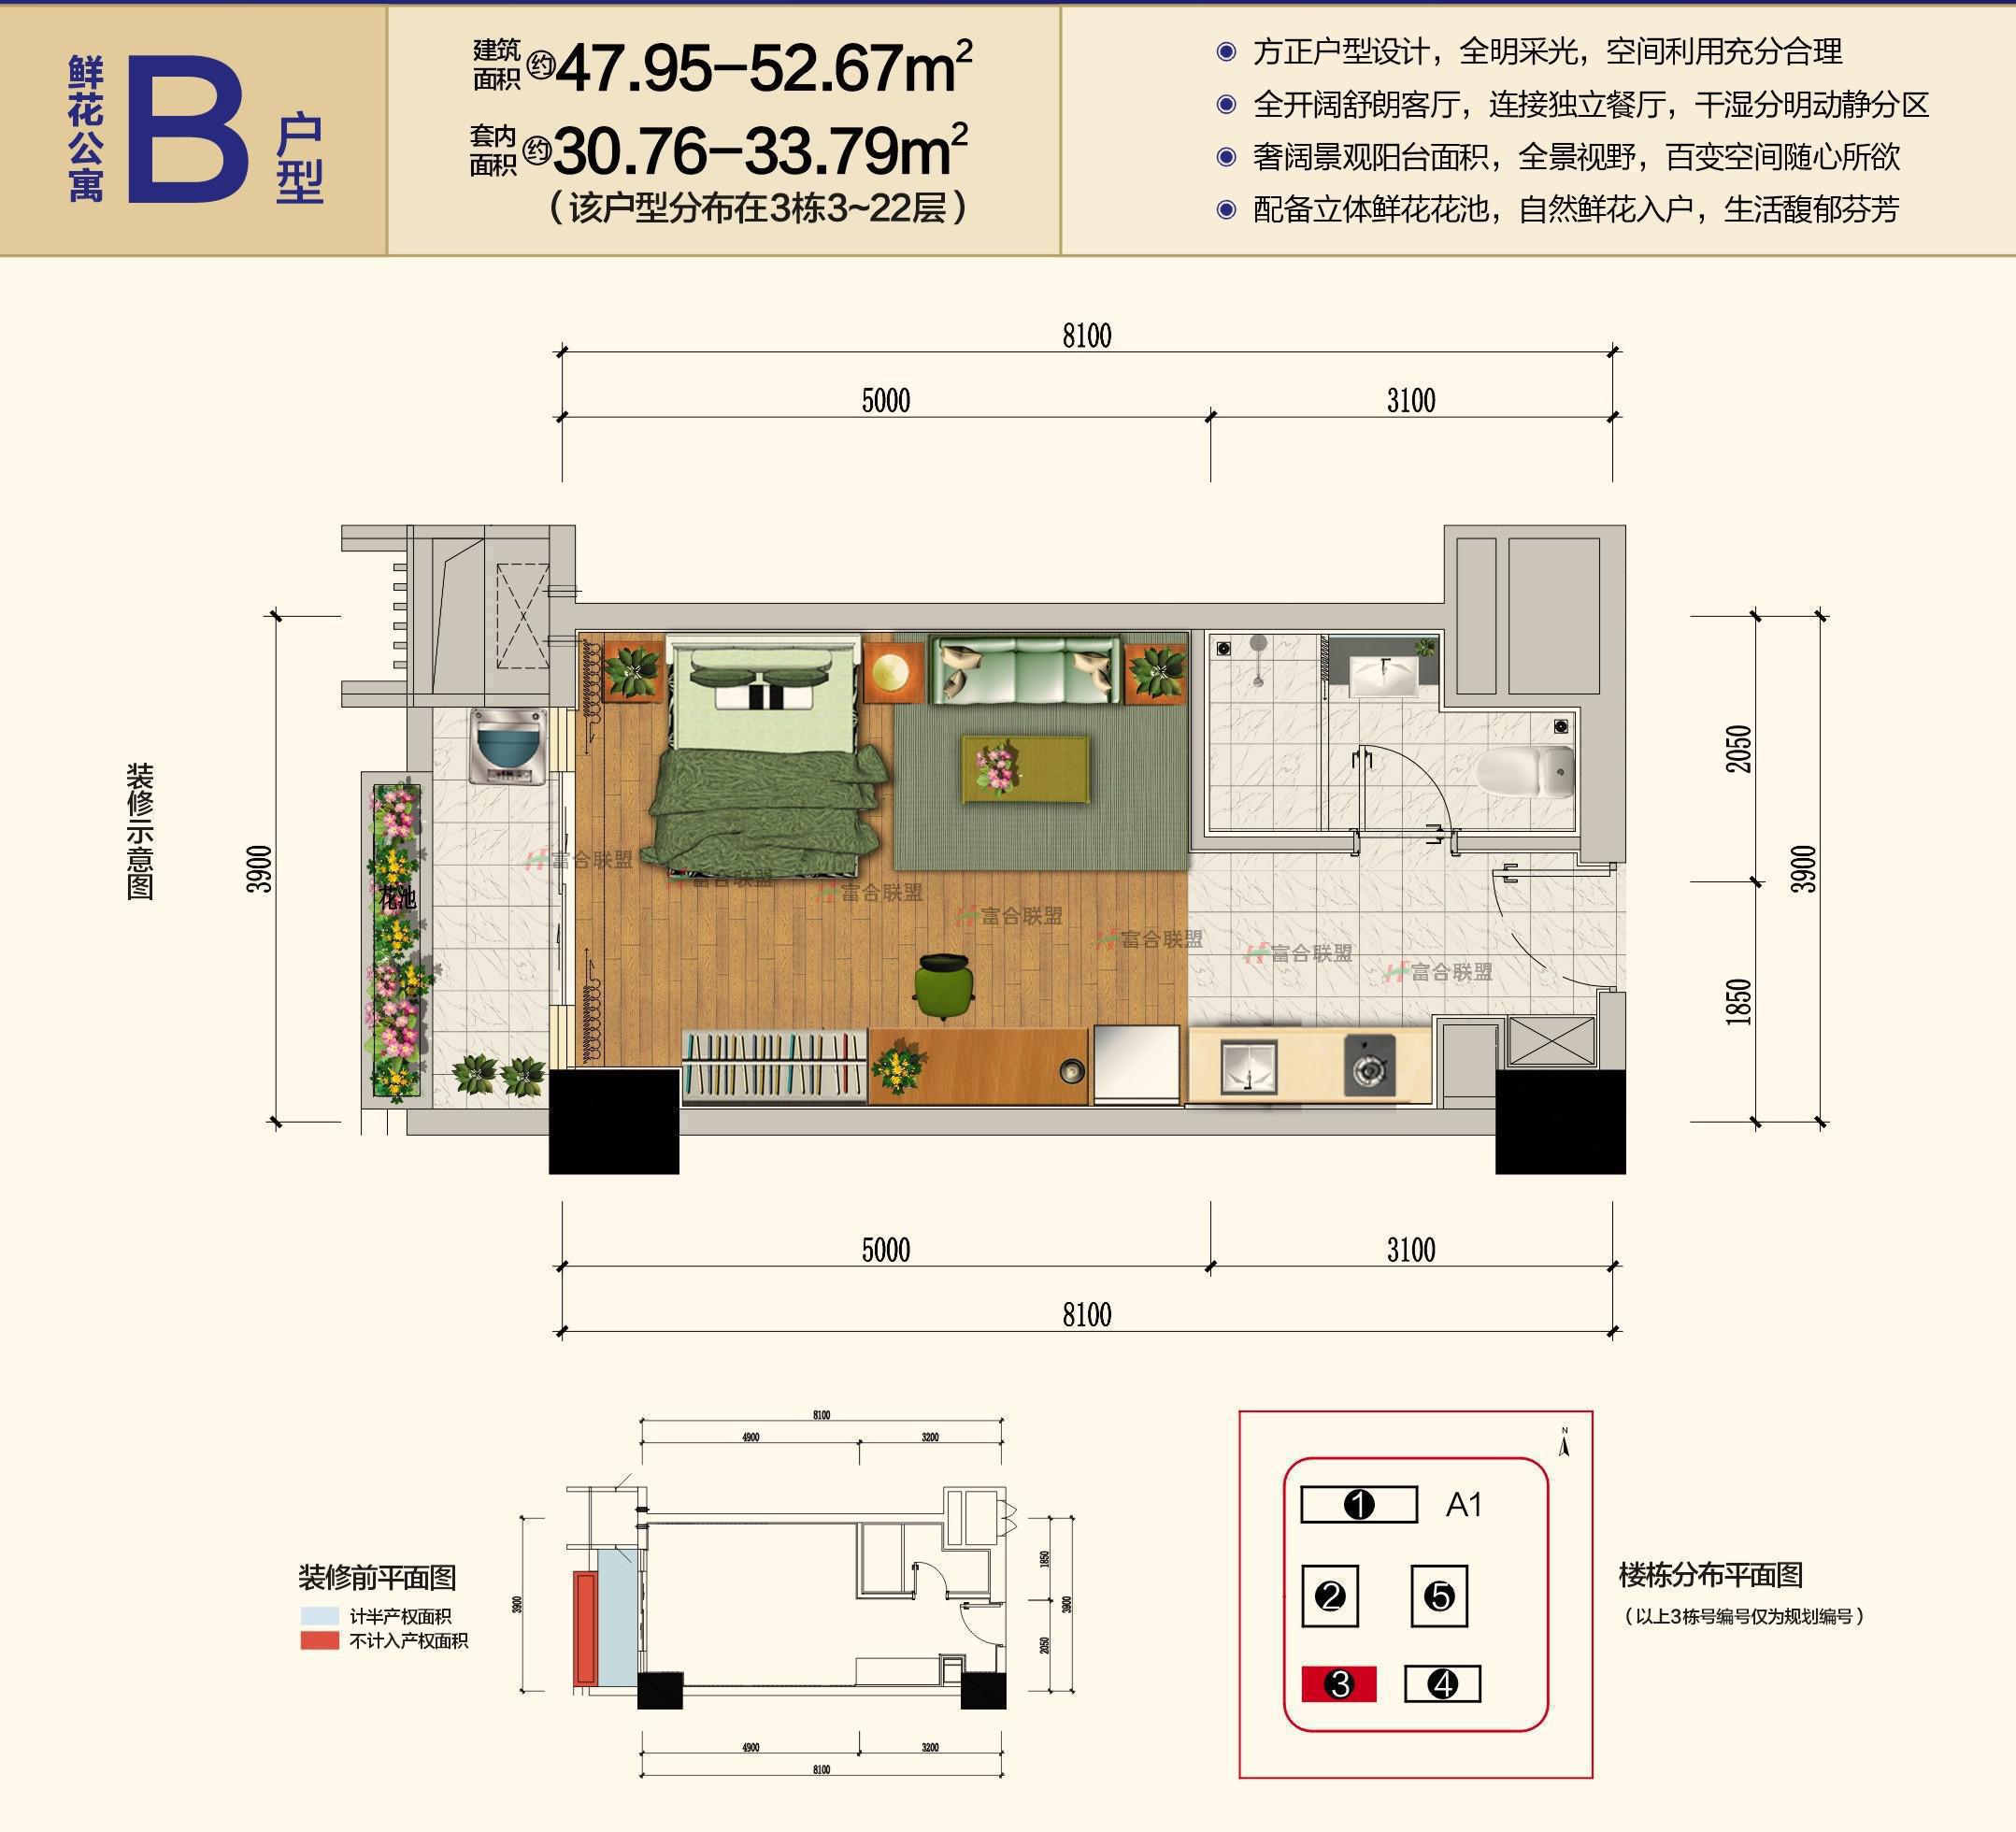 鲜花公寓B户型47.95-52.76㎡.JPG 